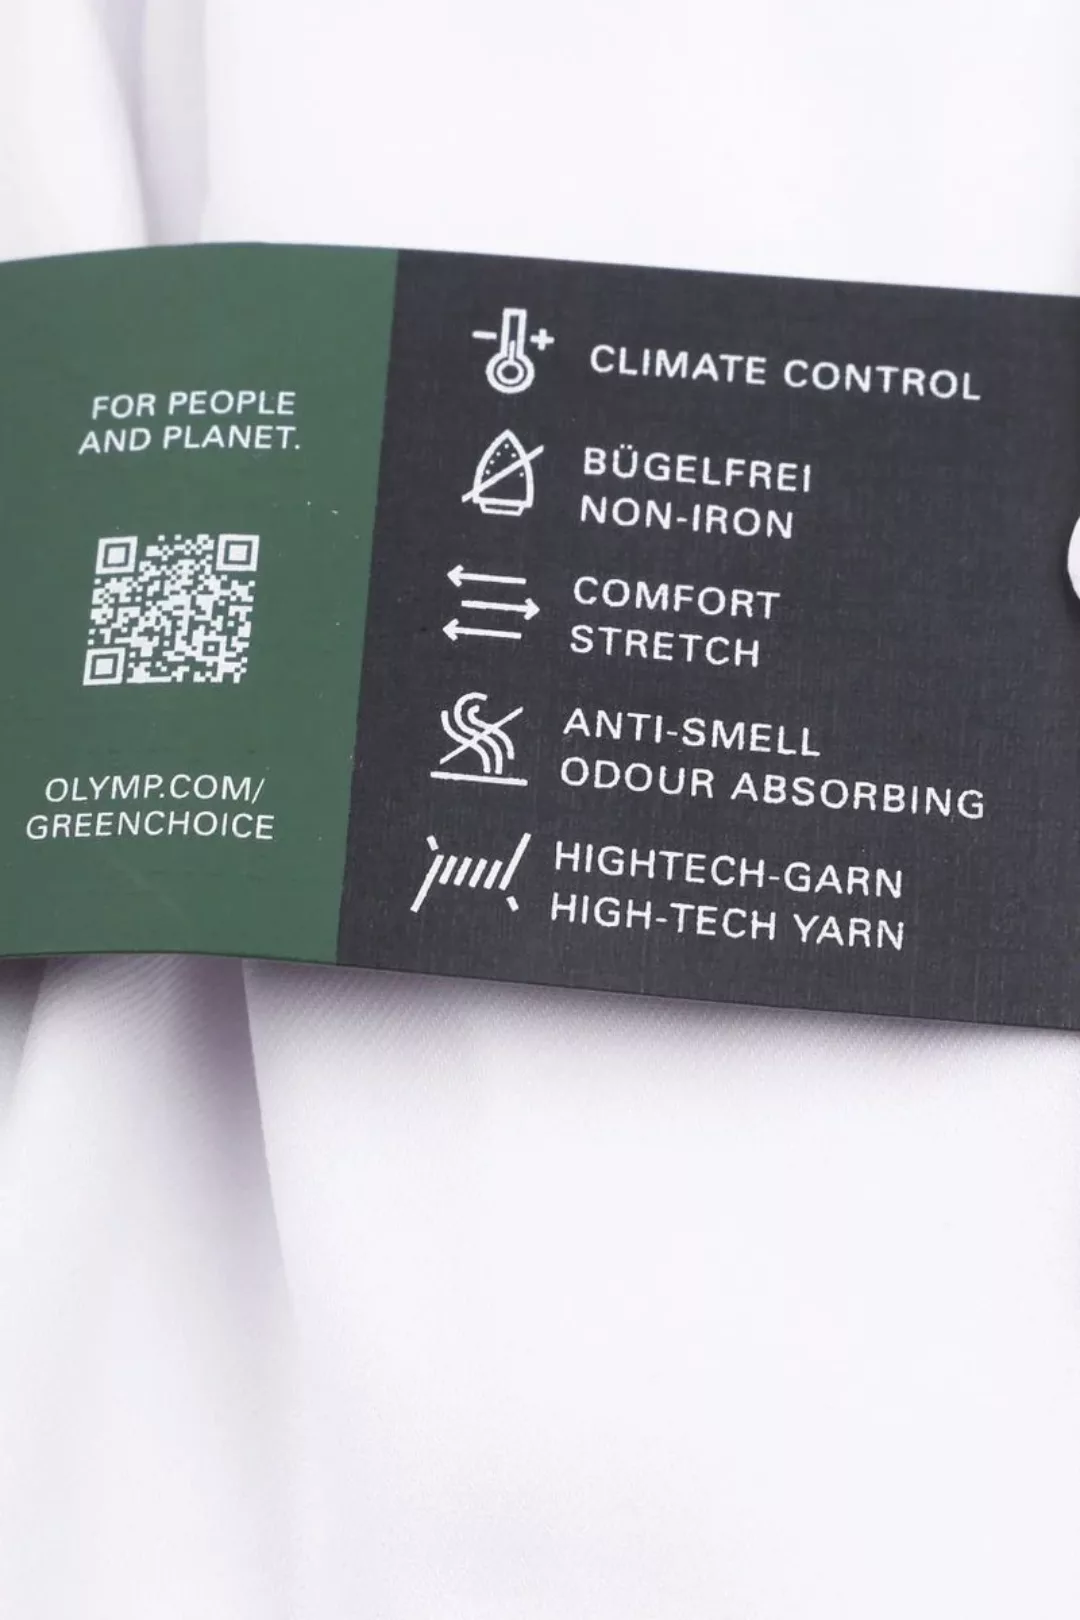 OLYMP Luxor 24/Seven Hemd Weiß - Größe 40 günstig online kaufen